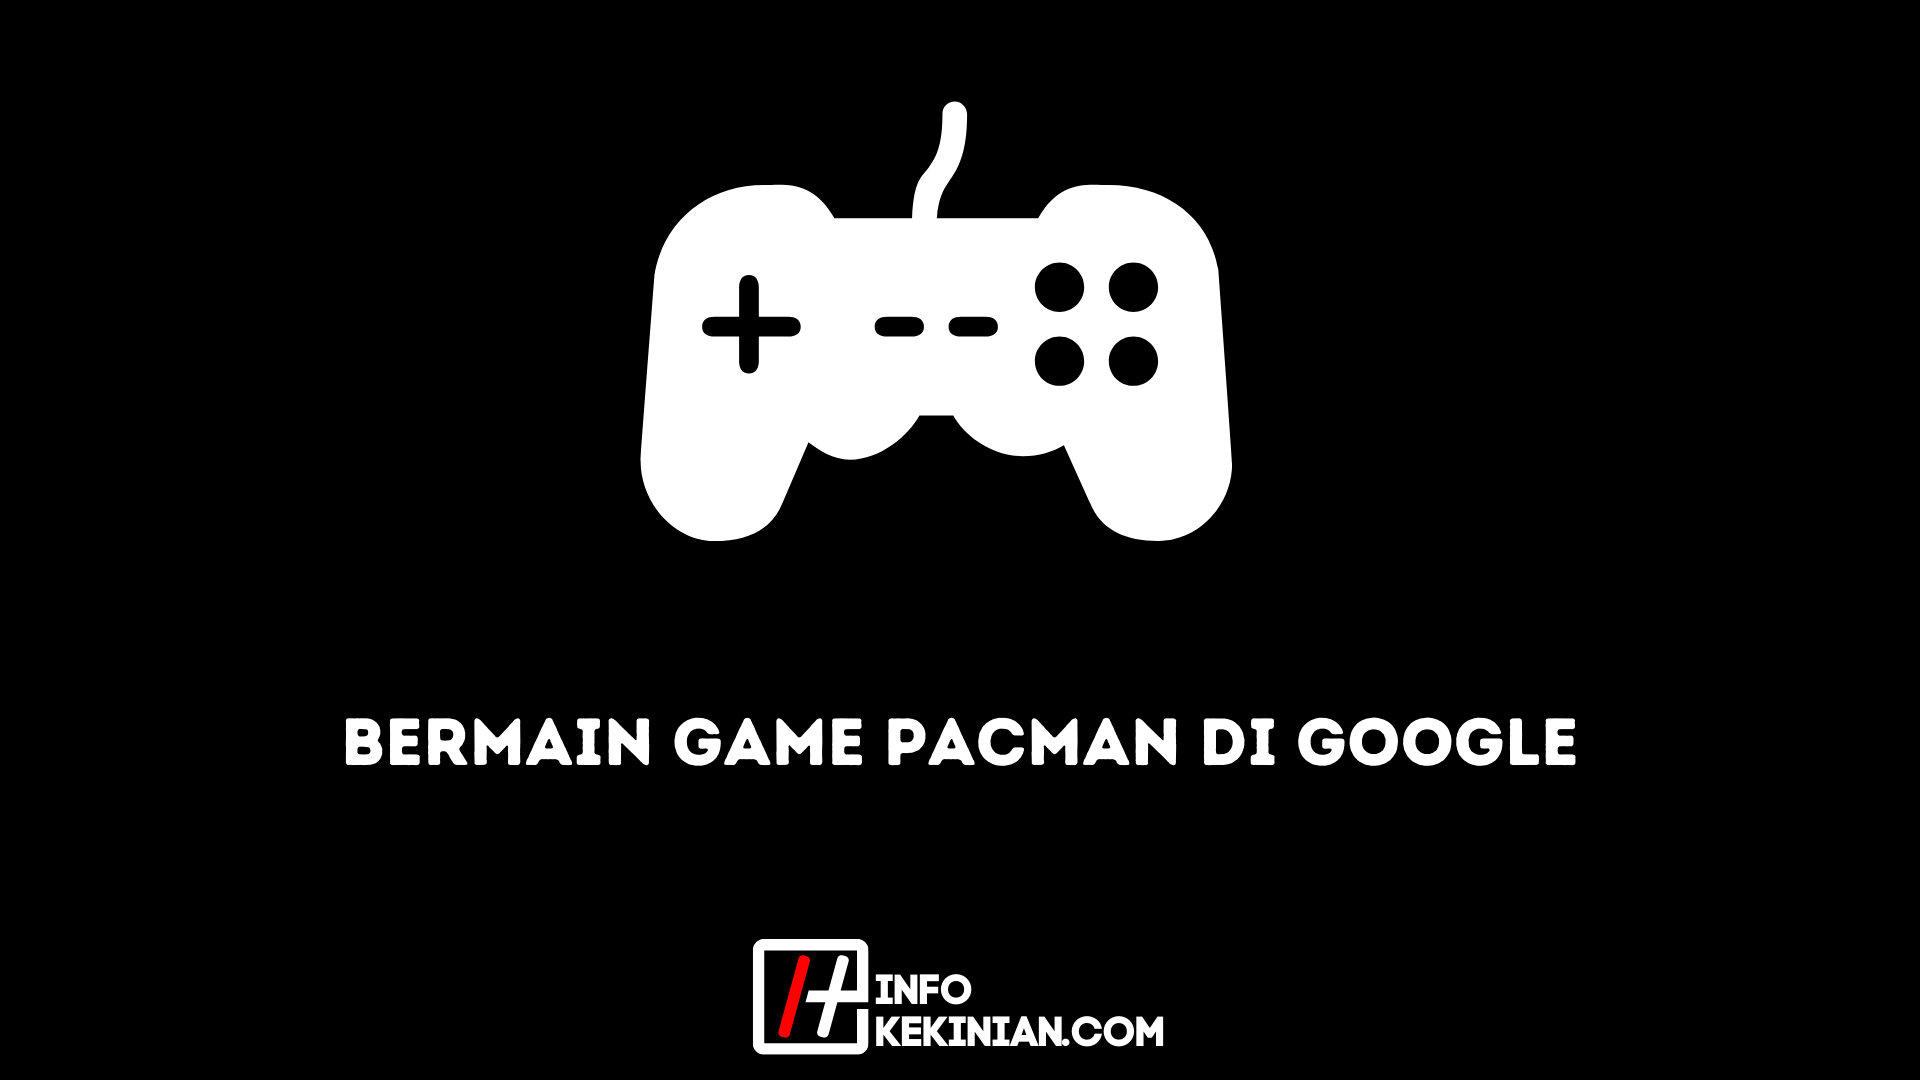 Bermain Game Pacman di Google